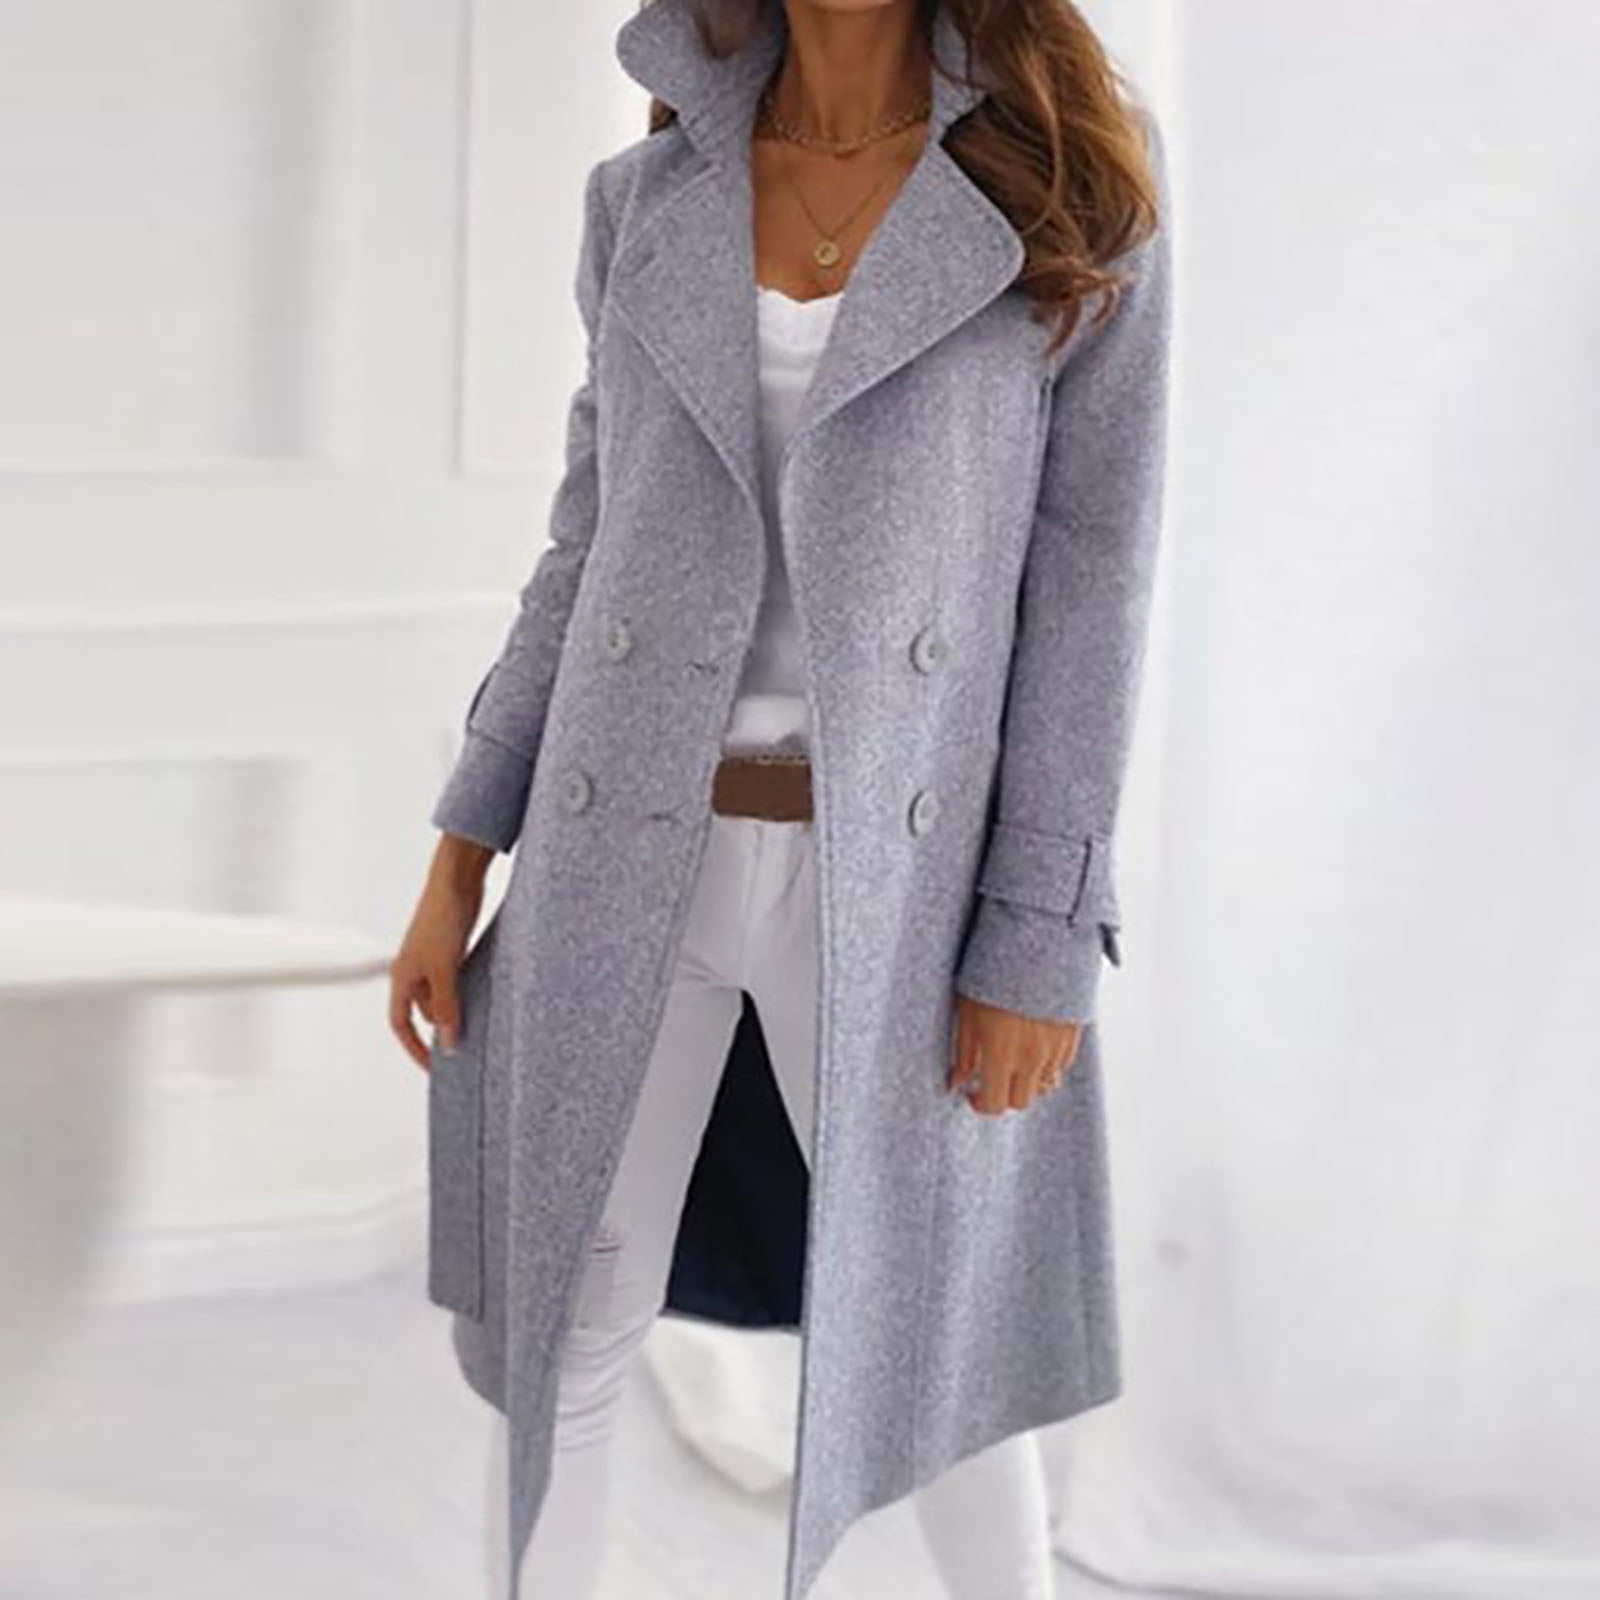 LAWOR Plus Size Coats Winter Clearance Women Trendy Long Sleeve Woolen  Lapel Solid Color Long Jacket Coat Fall Savings Z